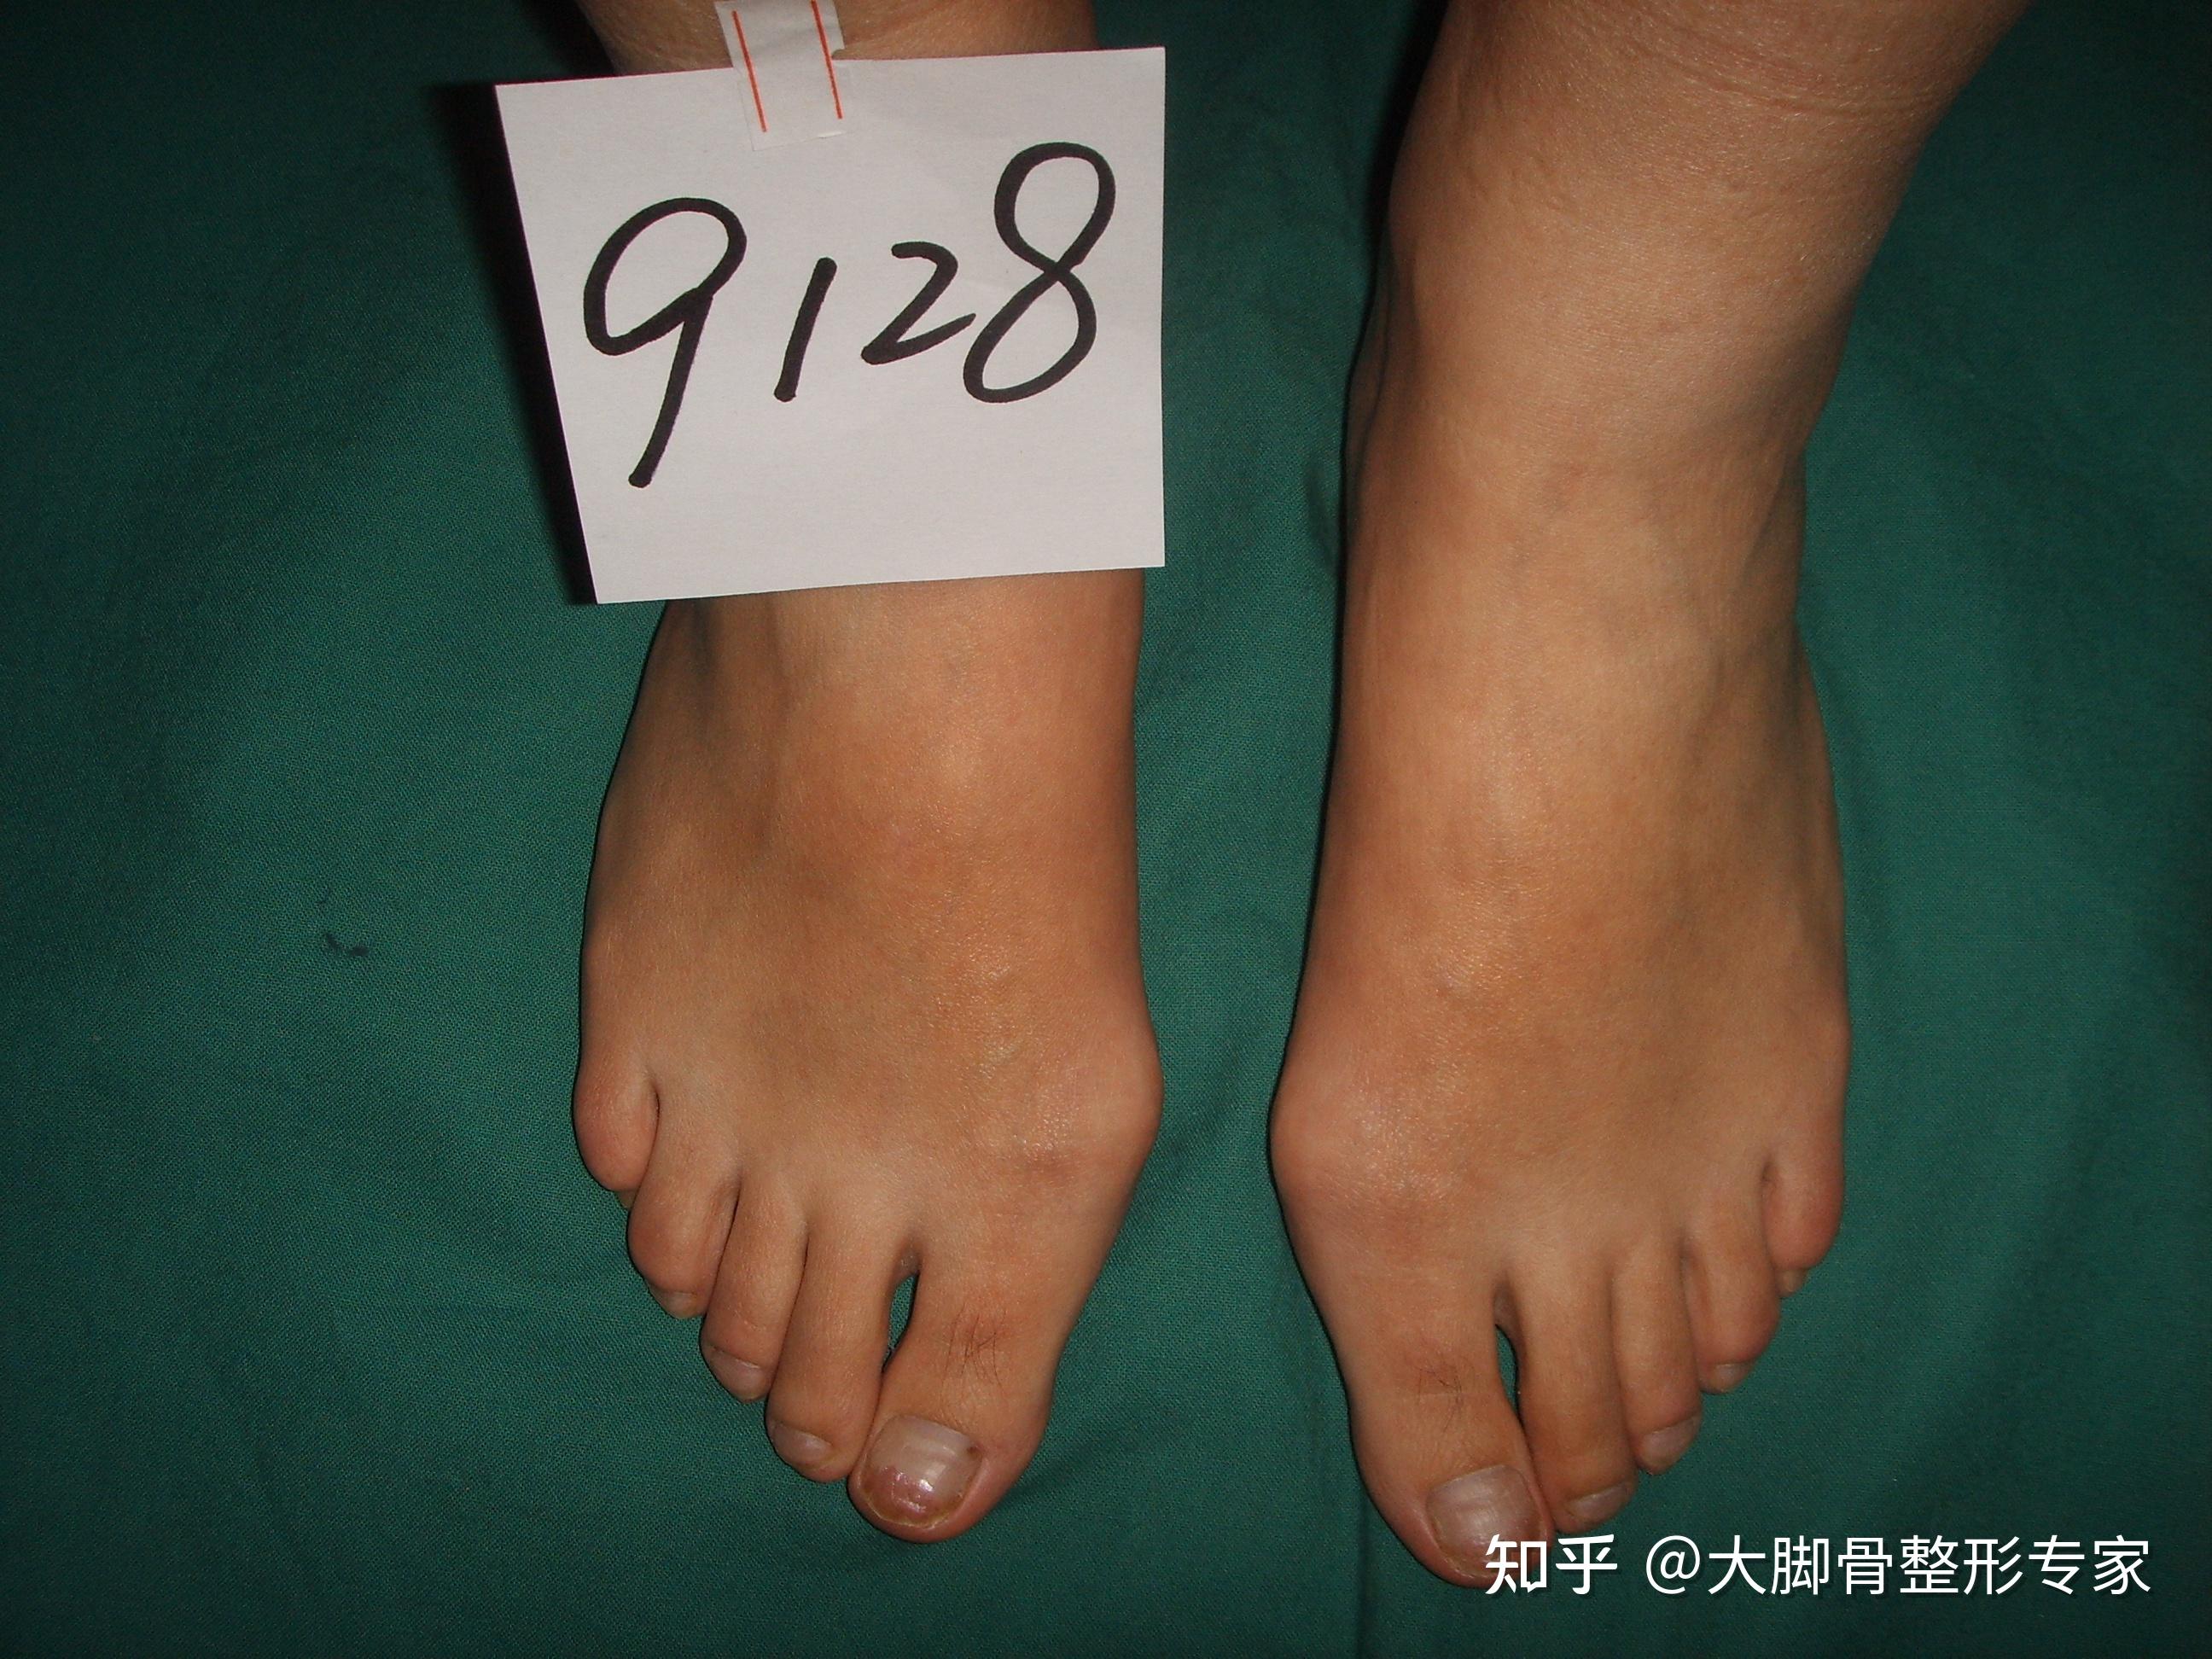 新疆乌鲁木齐大脚骨手术矫正案例 | 拇外翻|湖南长沙拇外翻手术|从2004年起专业矫正大脚骨